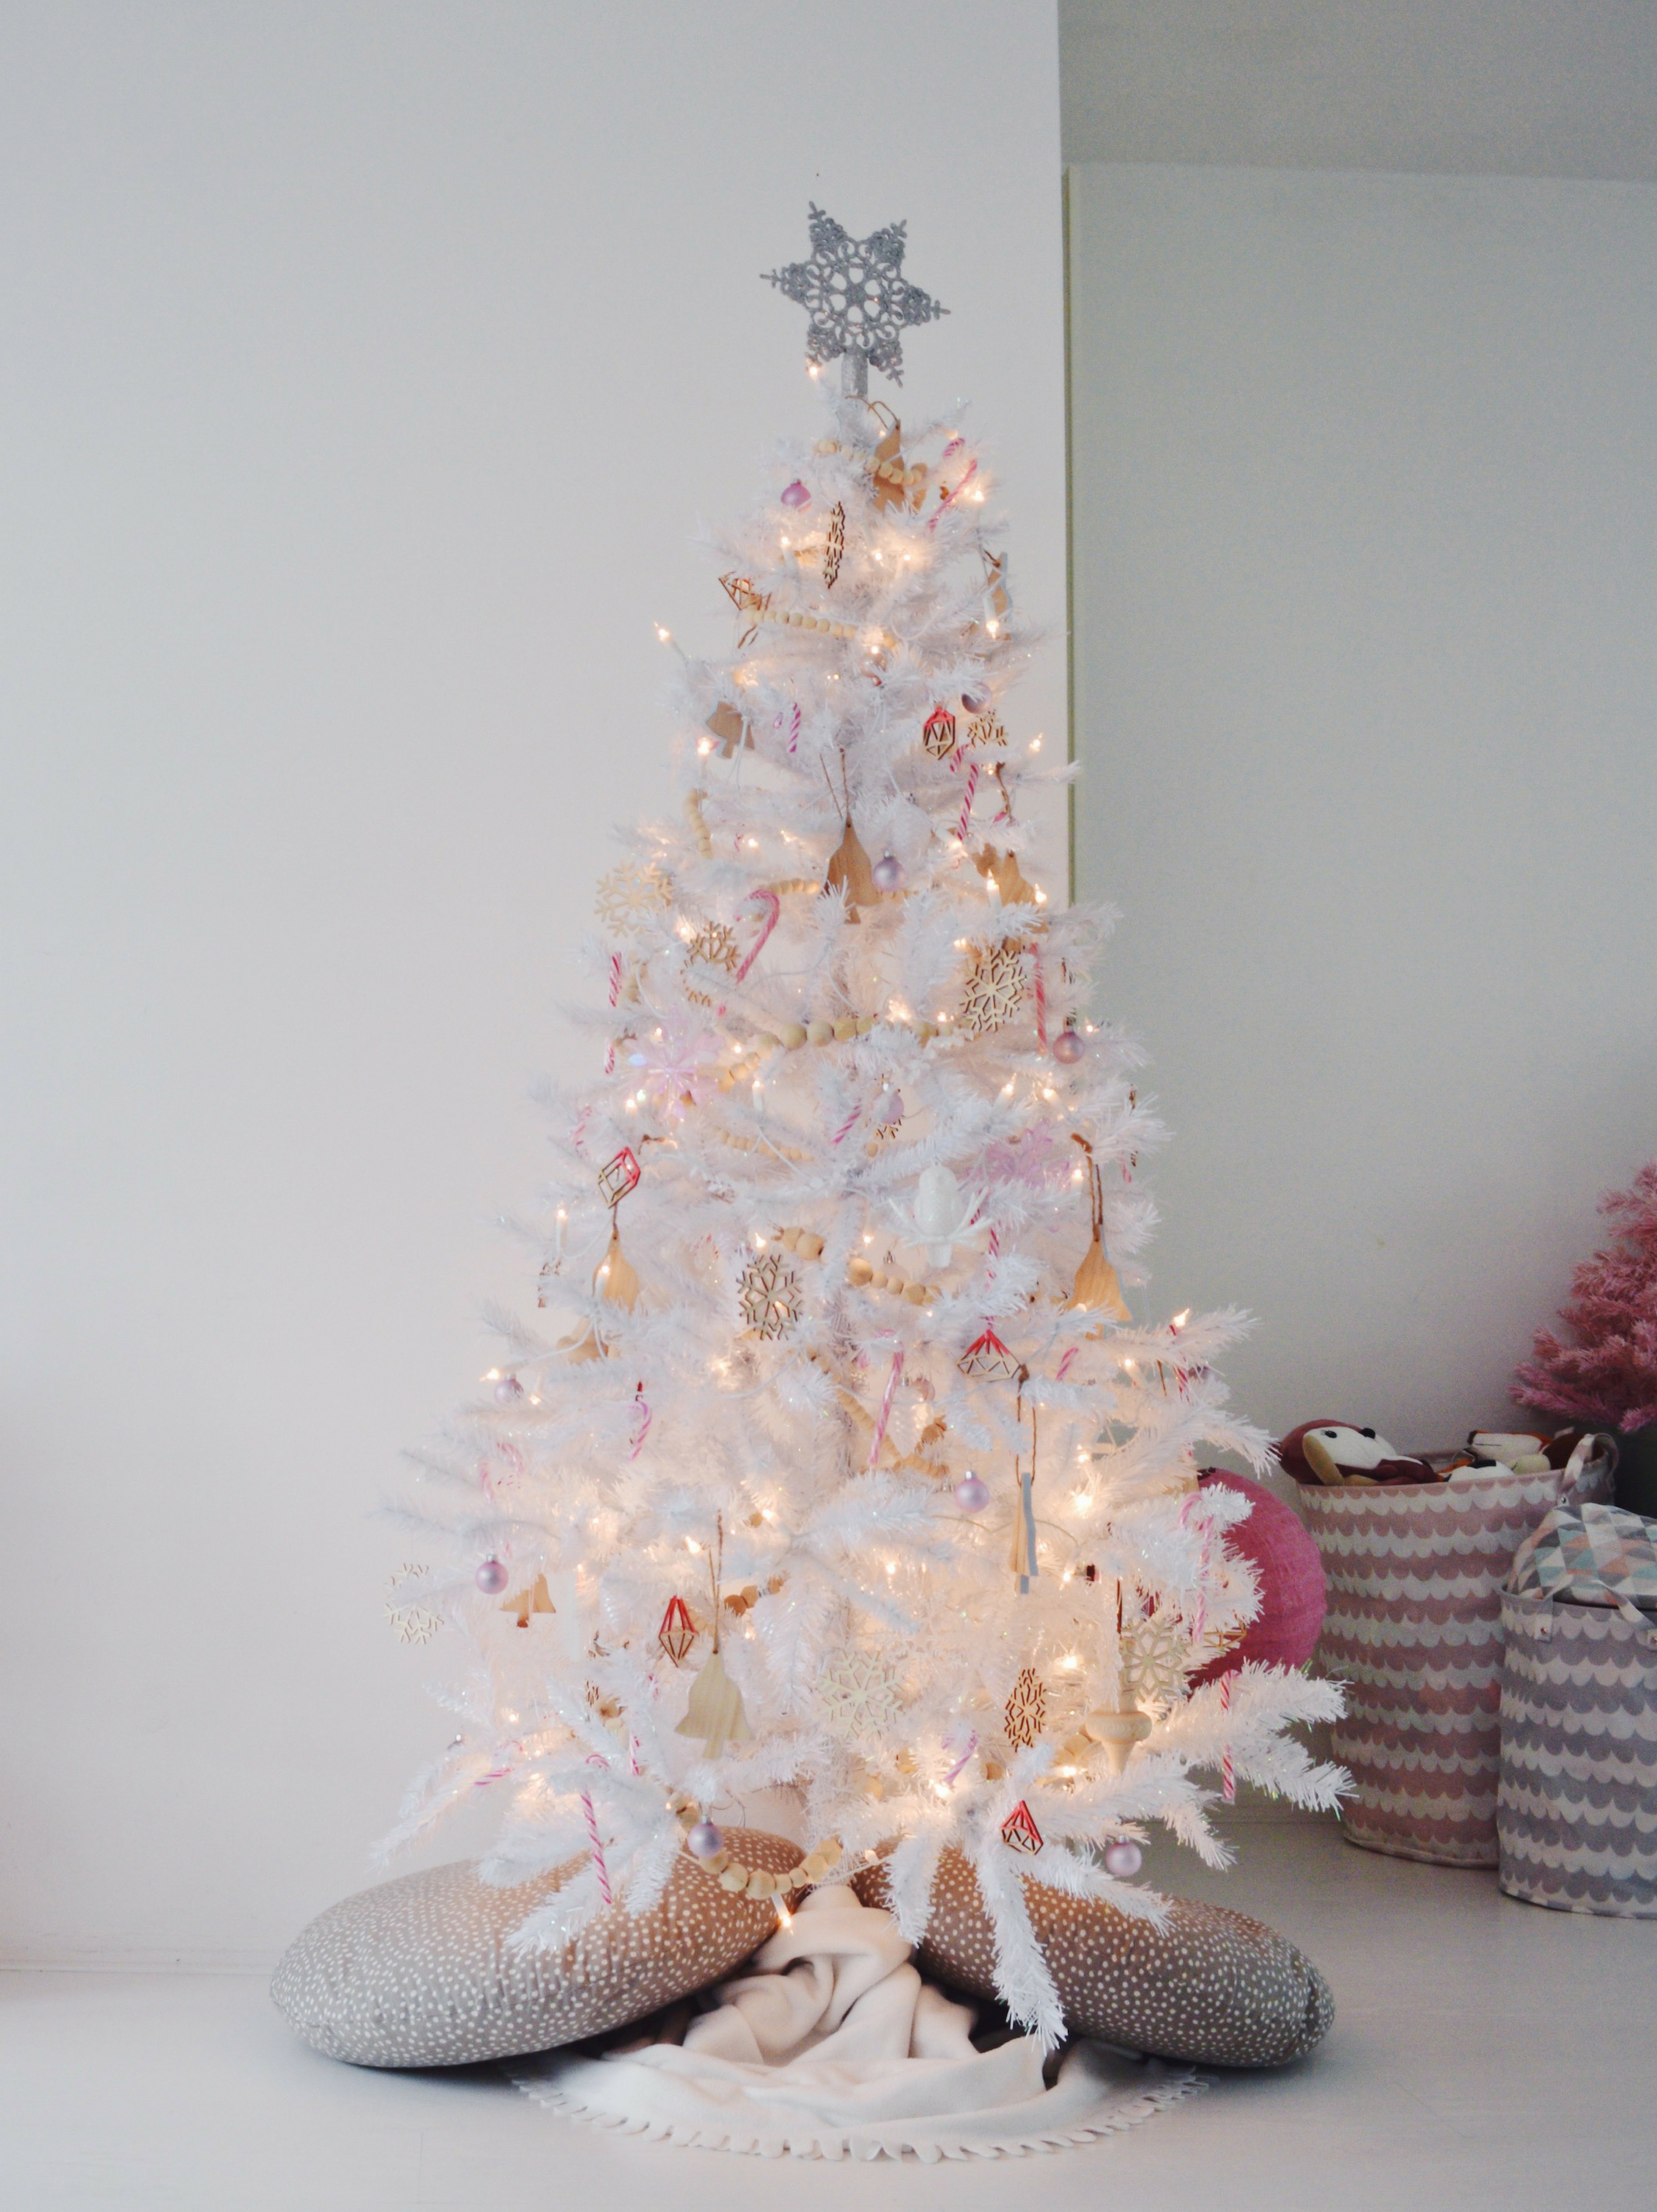 kersthuis 2018 witte kerstboom